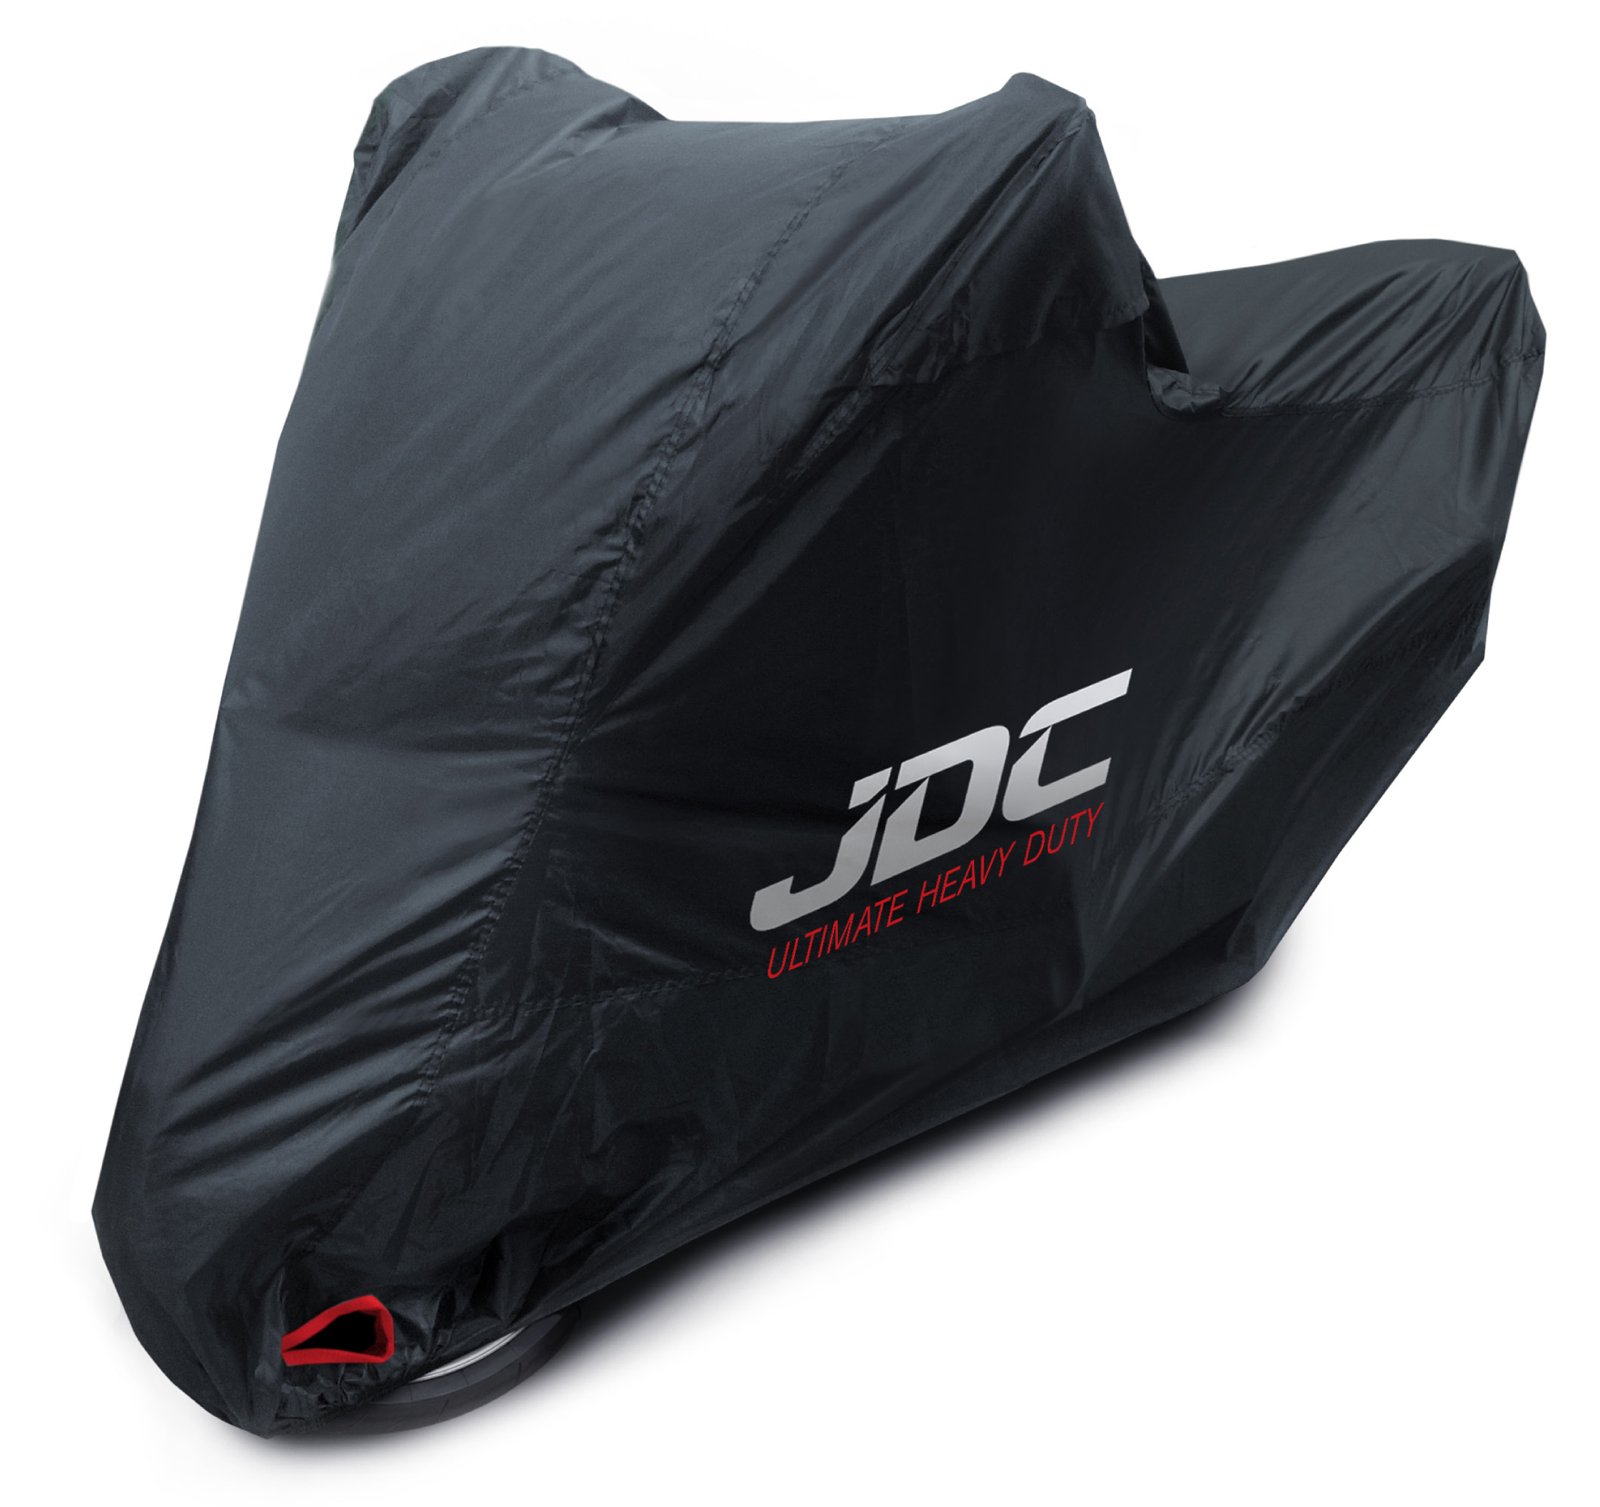 JDC 100% wasserdichte Motorradabdeckung - Ultimate Heavy Duty (Extra strapazierfähig, weiches Futter, hitzebeständig, verschweißte Nähte) - XL Tall von JDC